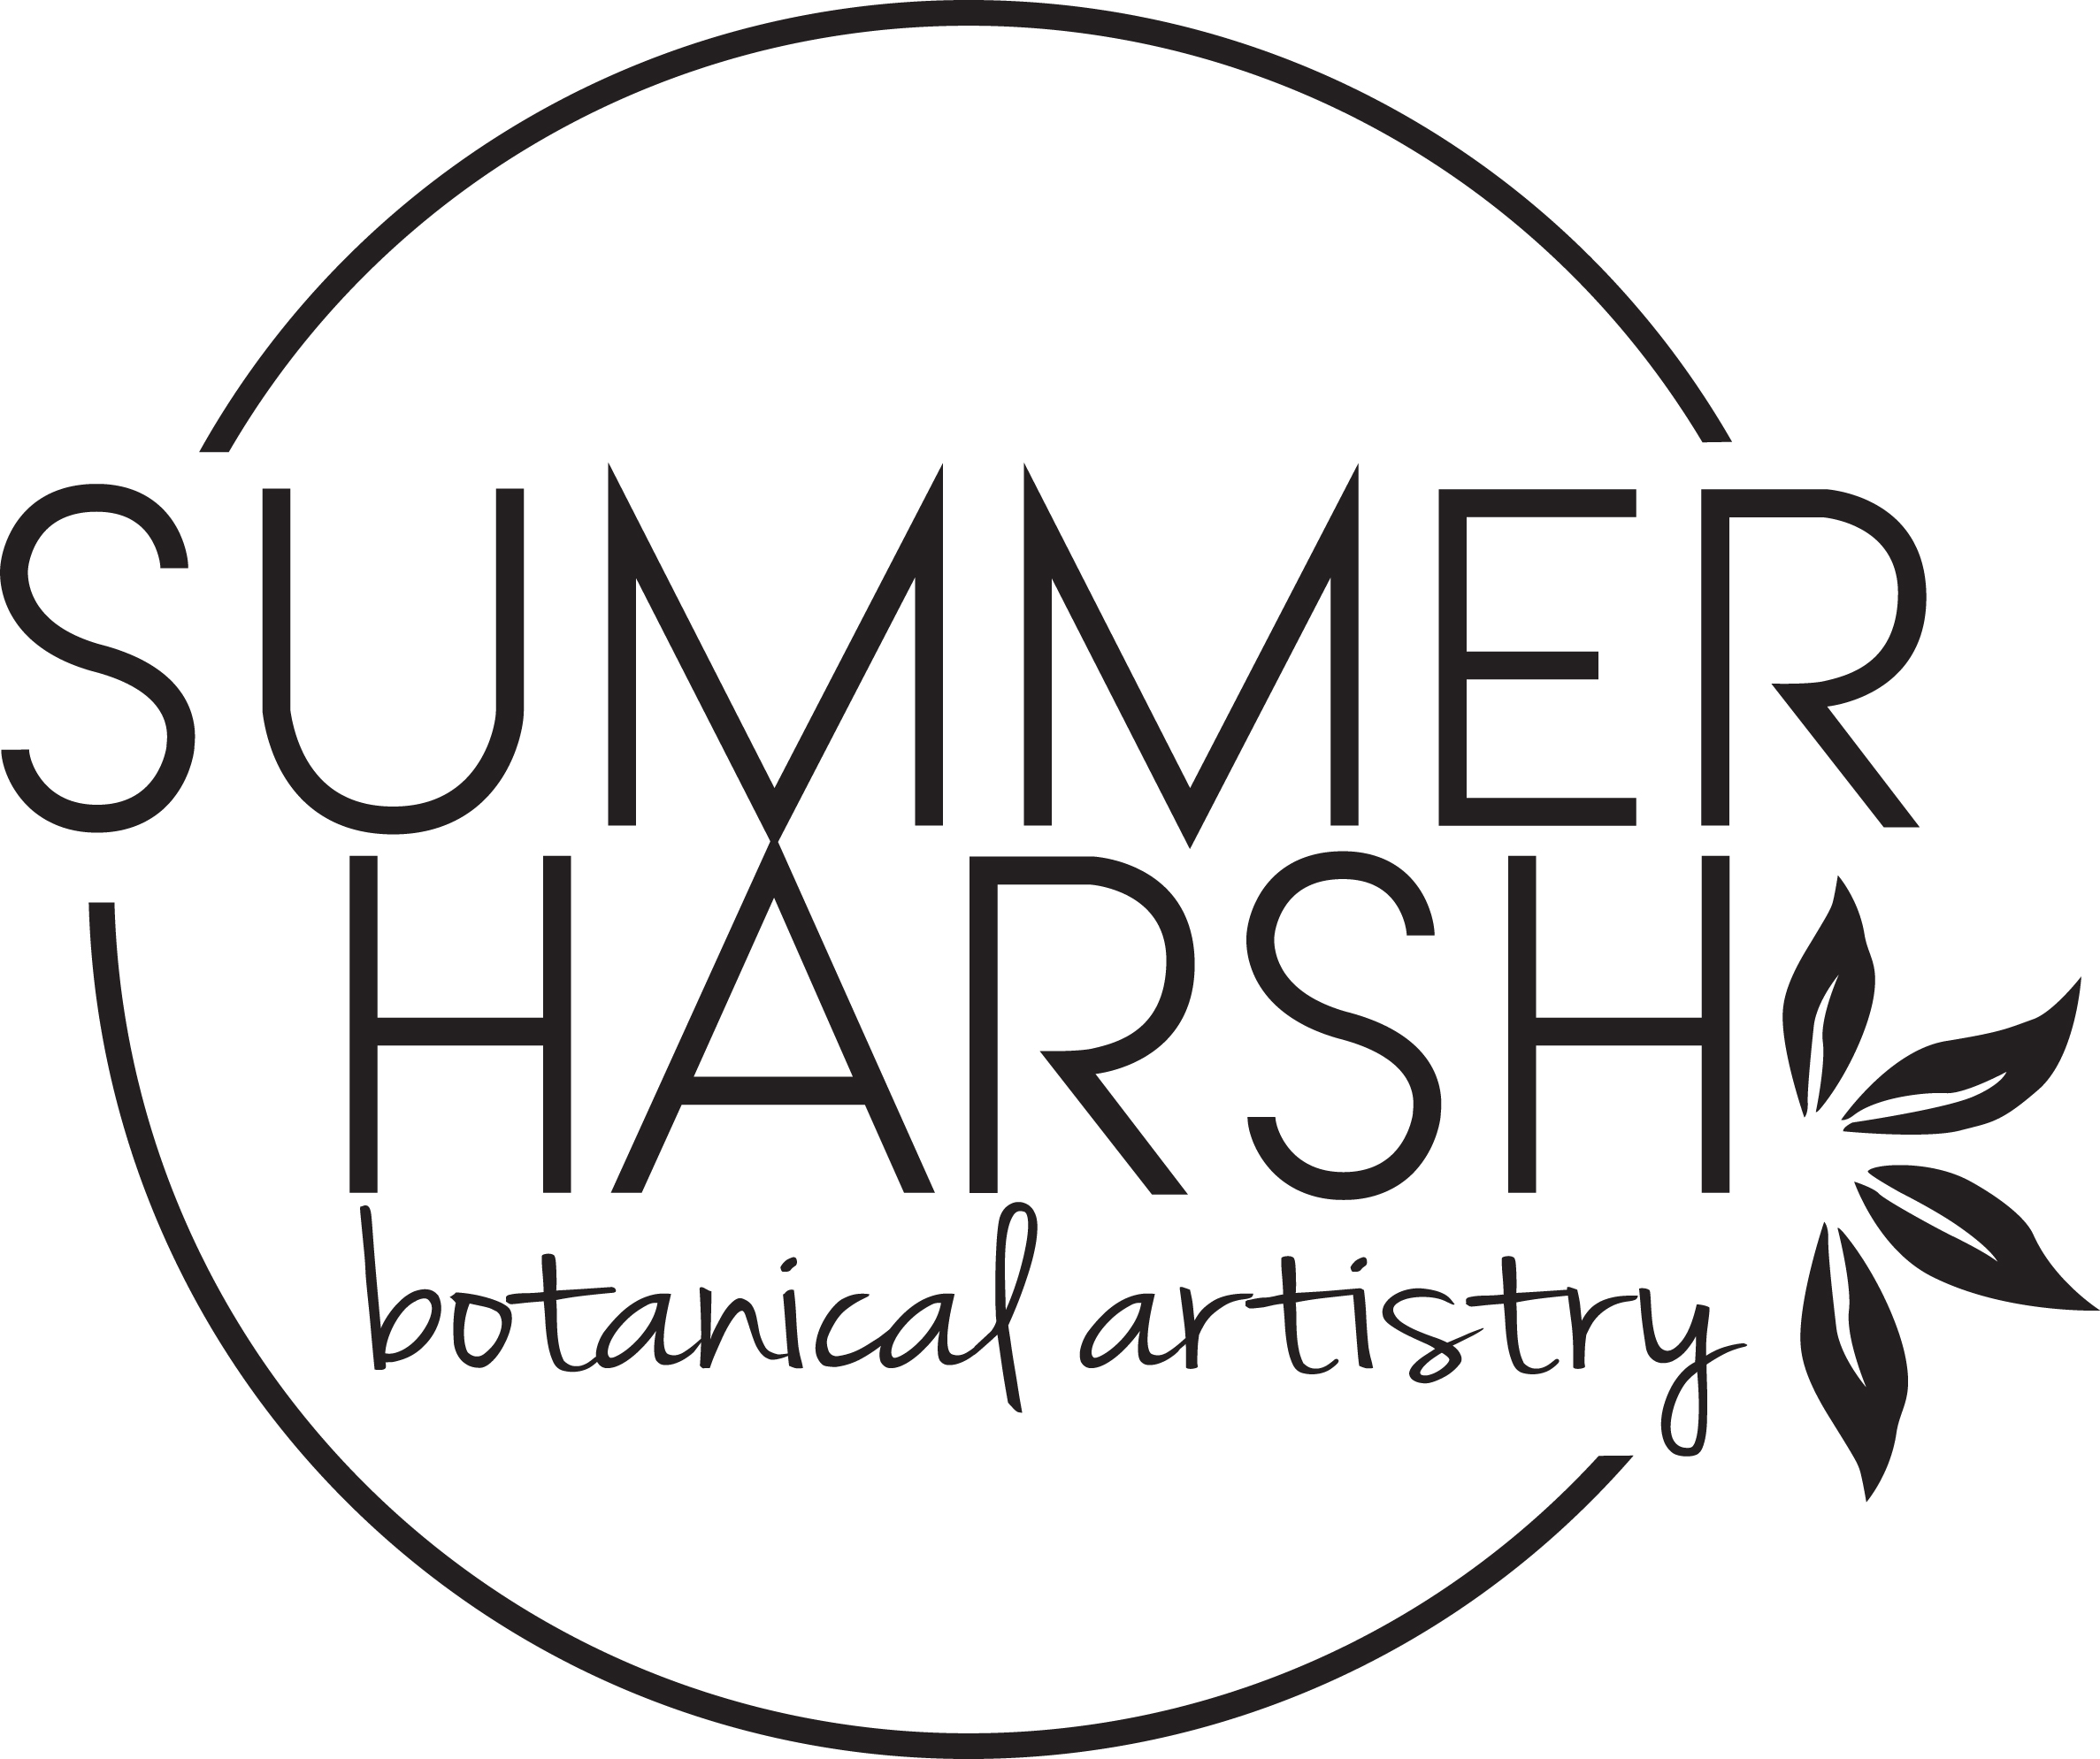 Summer Harsh Botanical Artistry